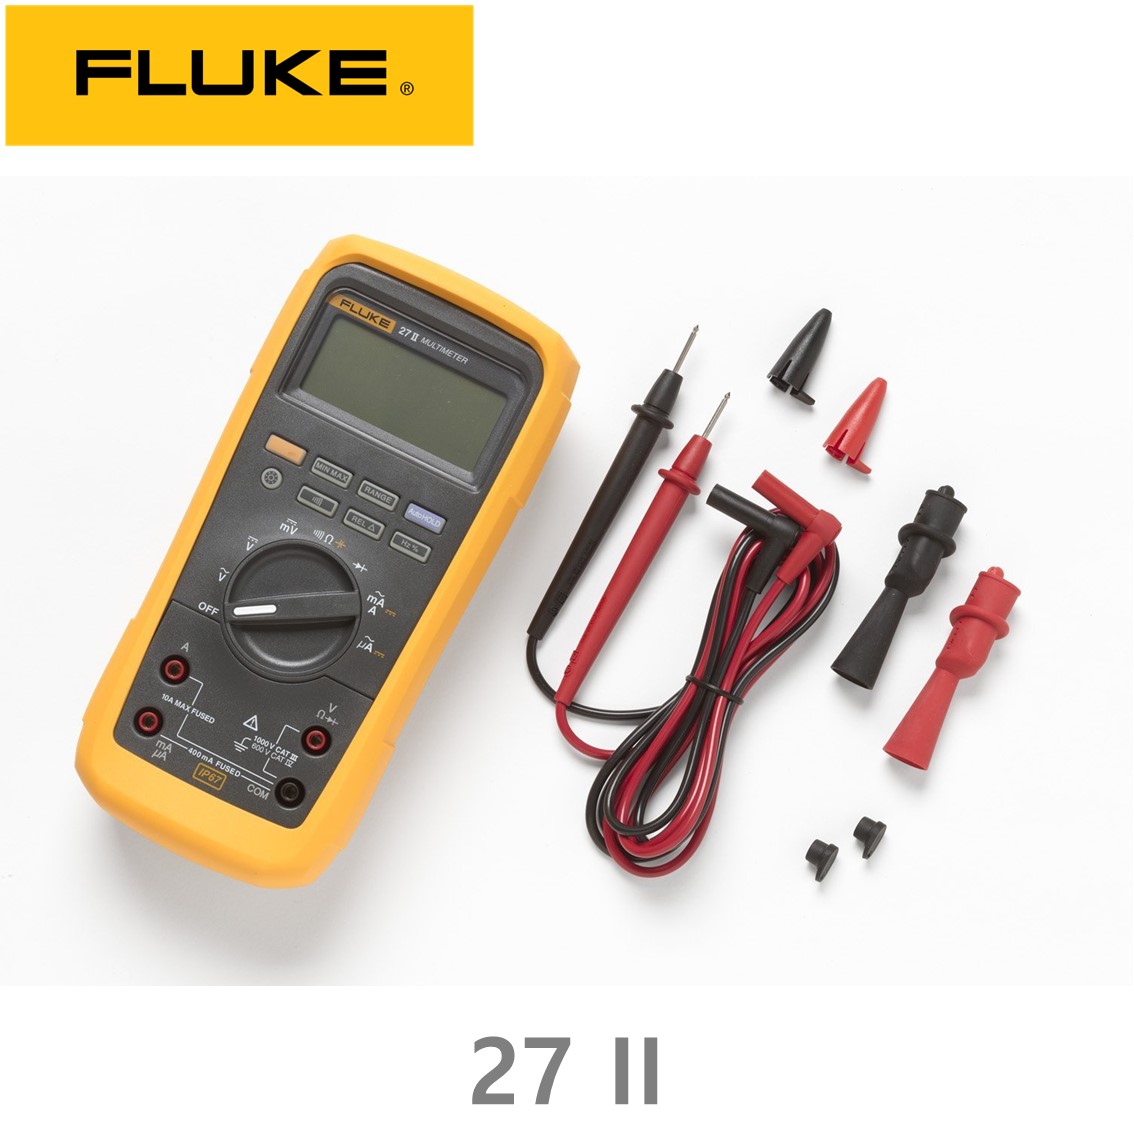 [ Fluke 27II ] 정품 플루크 디지털 멀티미터 27II, 27 II  플루크272